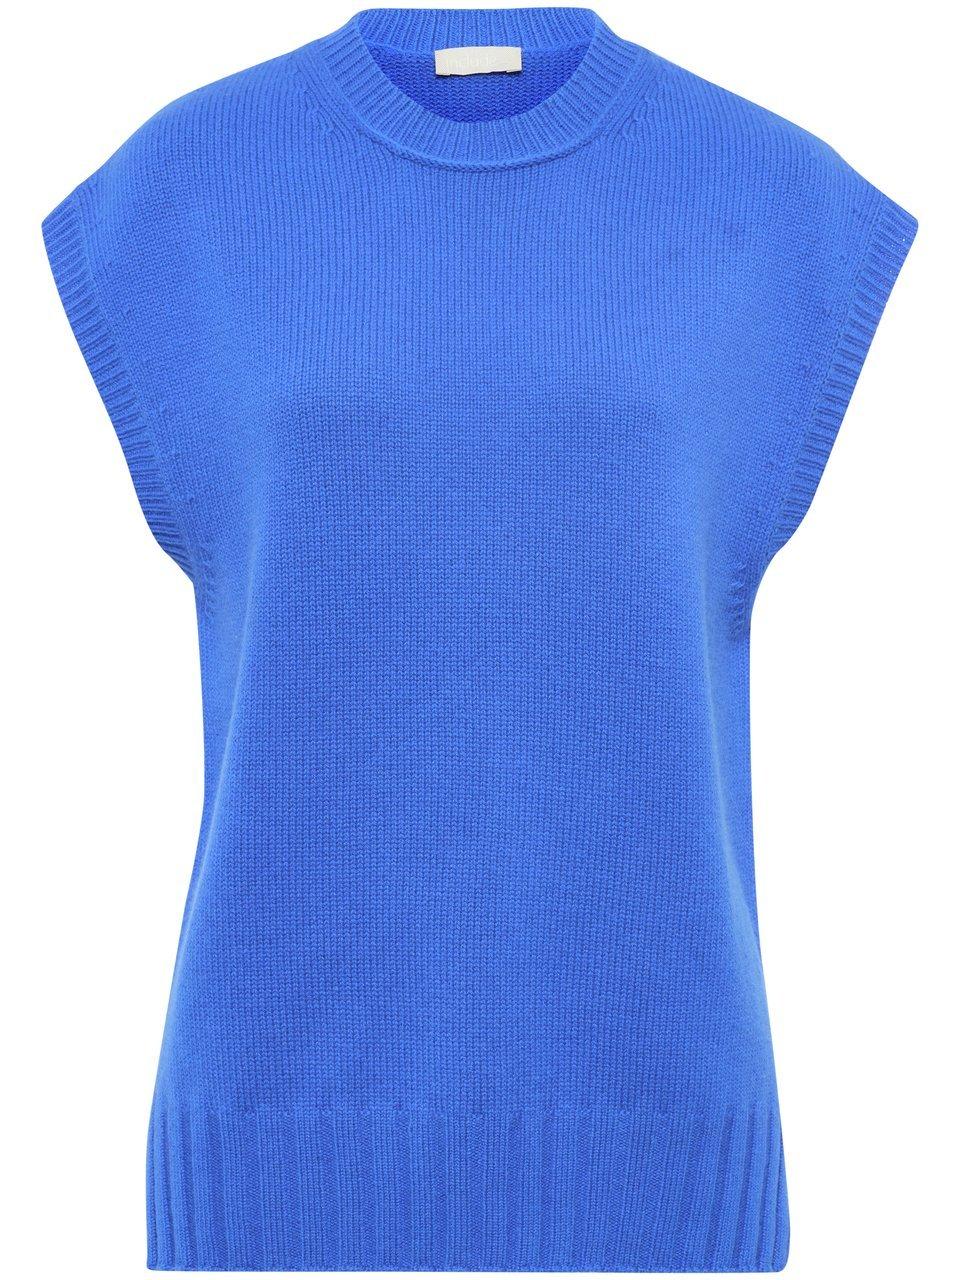 Sweatervest Van include blauw